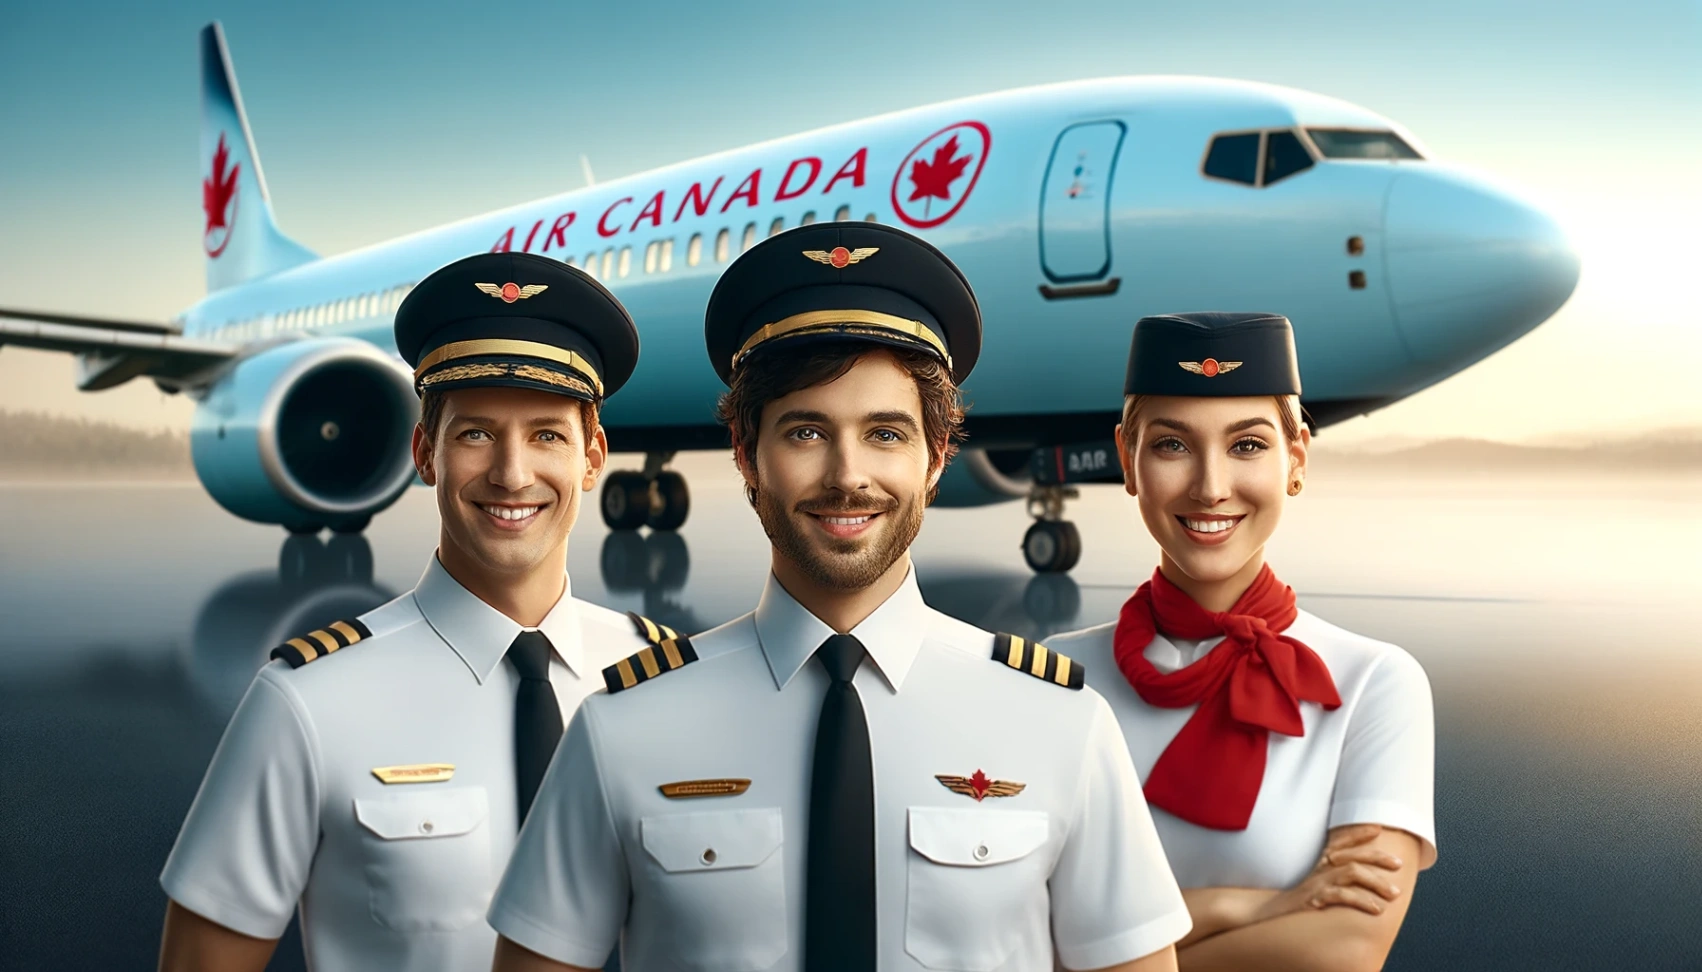 Ofertas de trabajo en Air Canada: Cómo aplicar